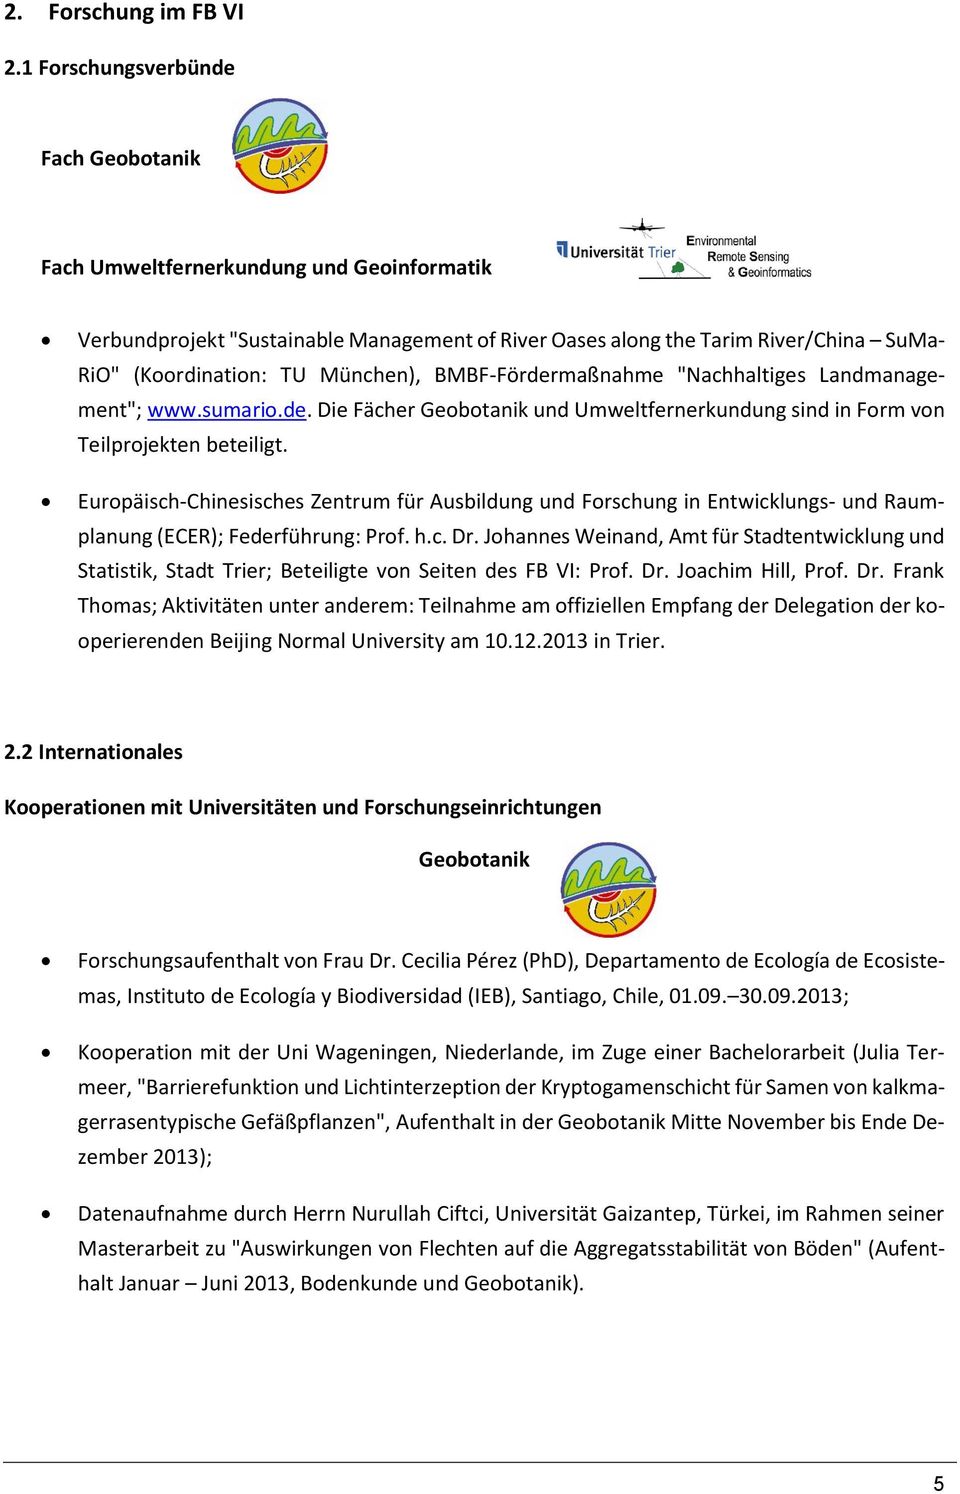 München), BMBF-Fördermaßnahme "Nachhaltiges Landmanagement"; www.sumario.de. Die Fächer Geobotanik und Umweltfernerkundung sind in Form von Teilprojekten beteiligt.